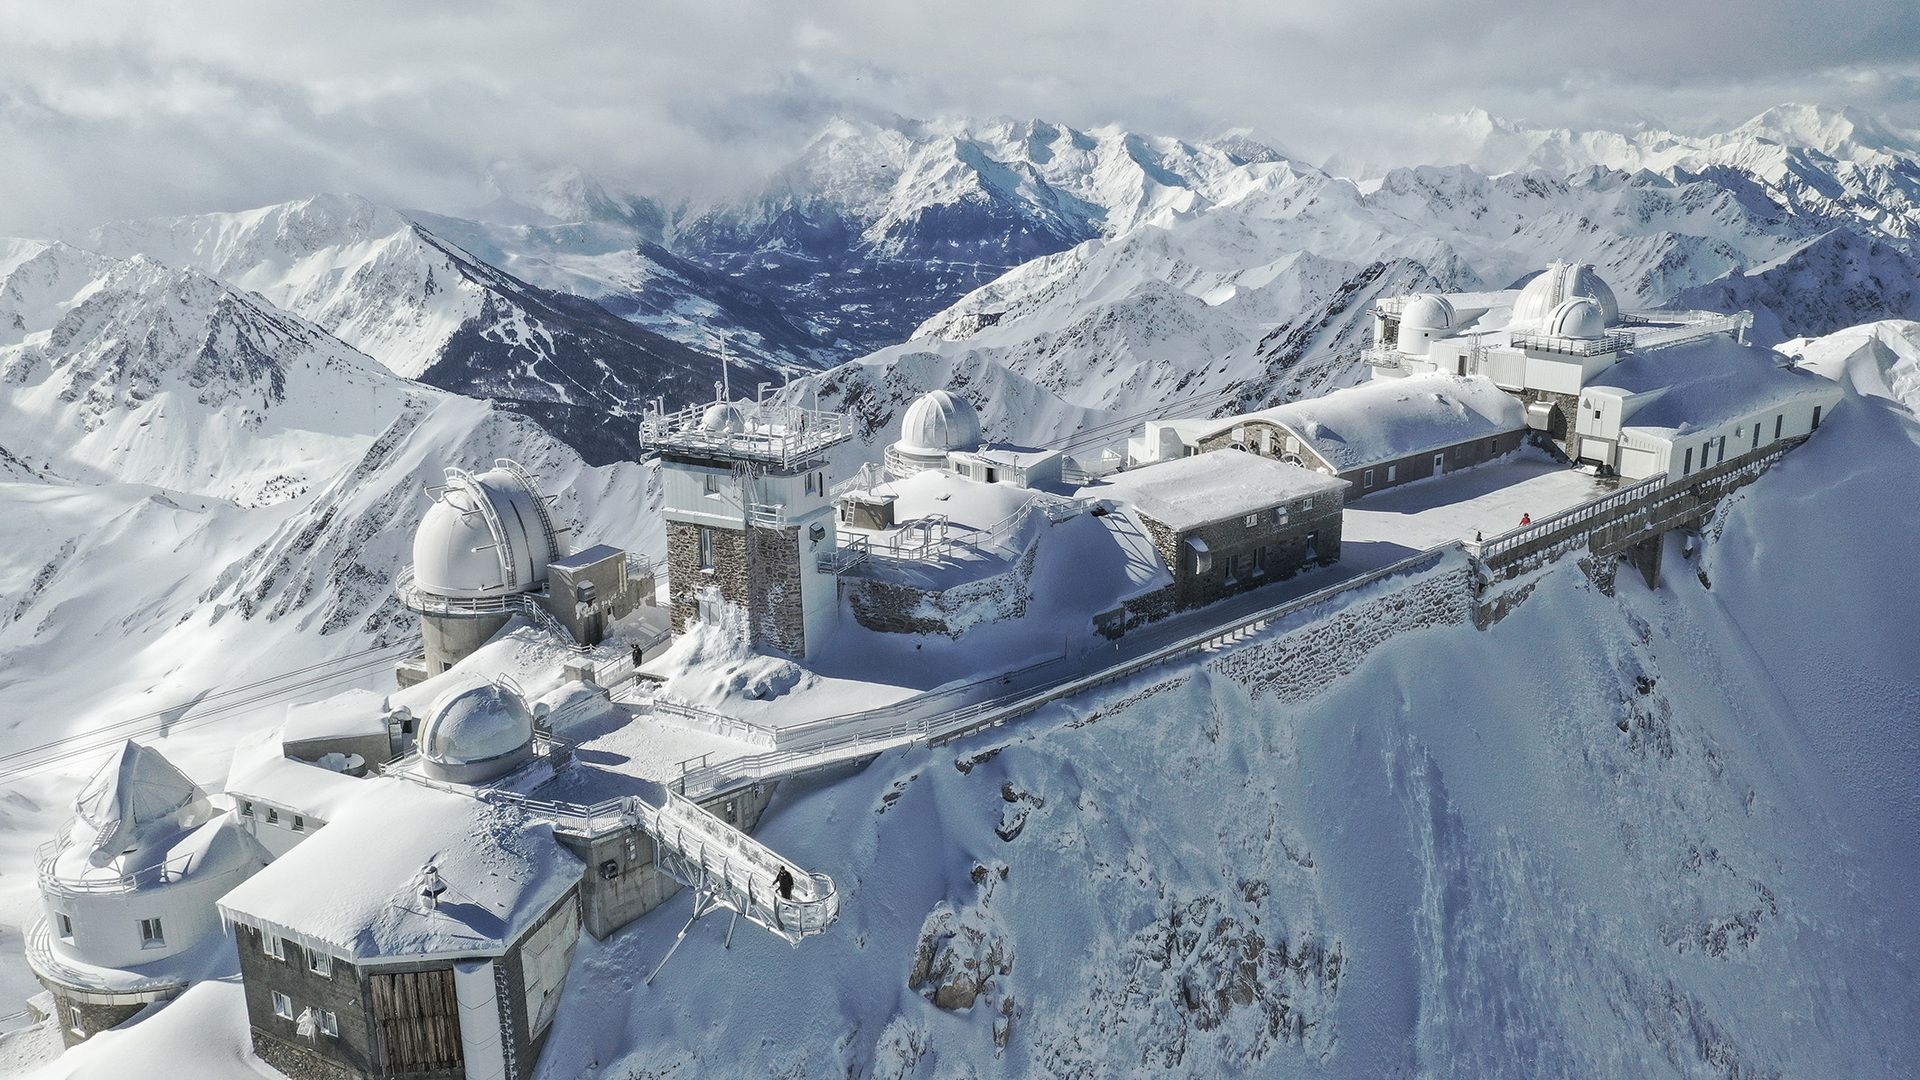 Imagen aérea del Pic du Midi y observatorio astronómico